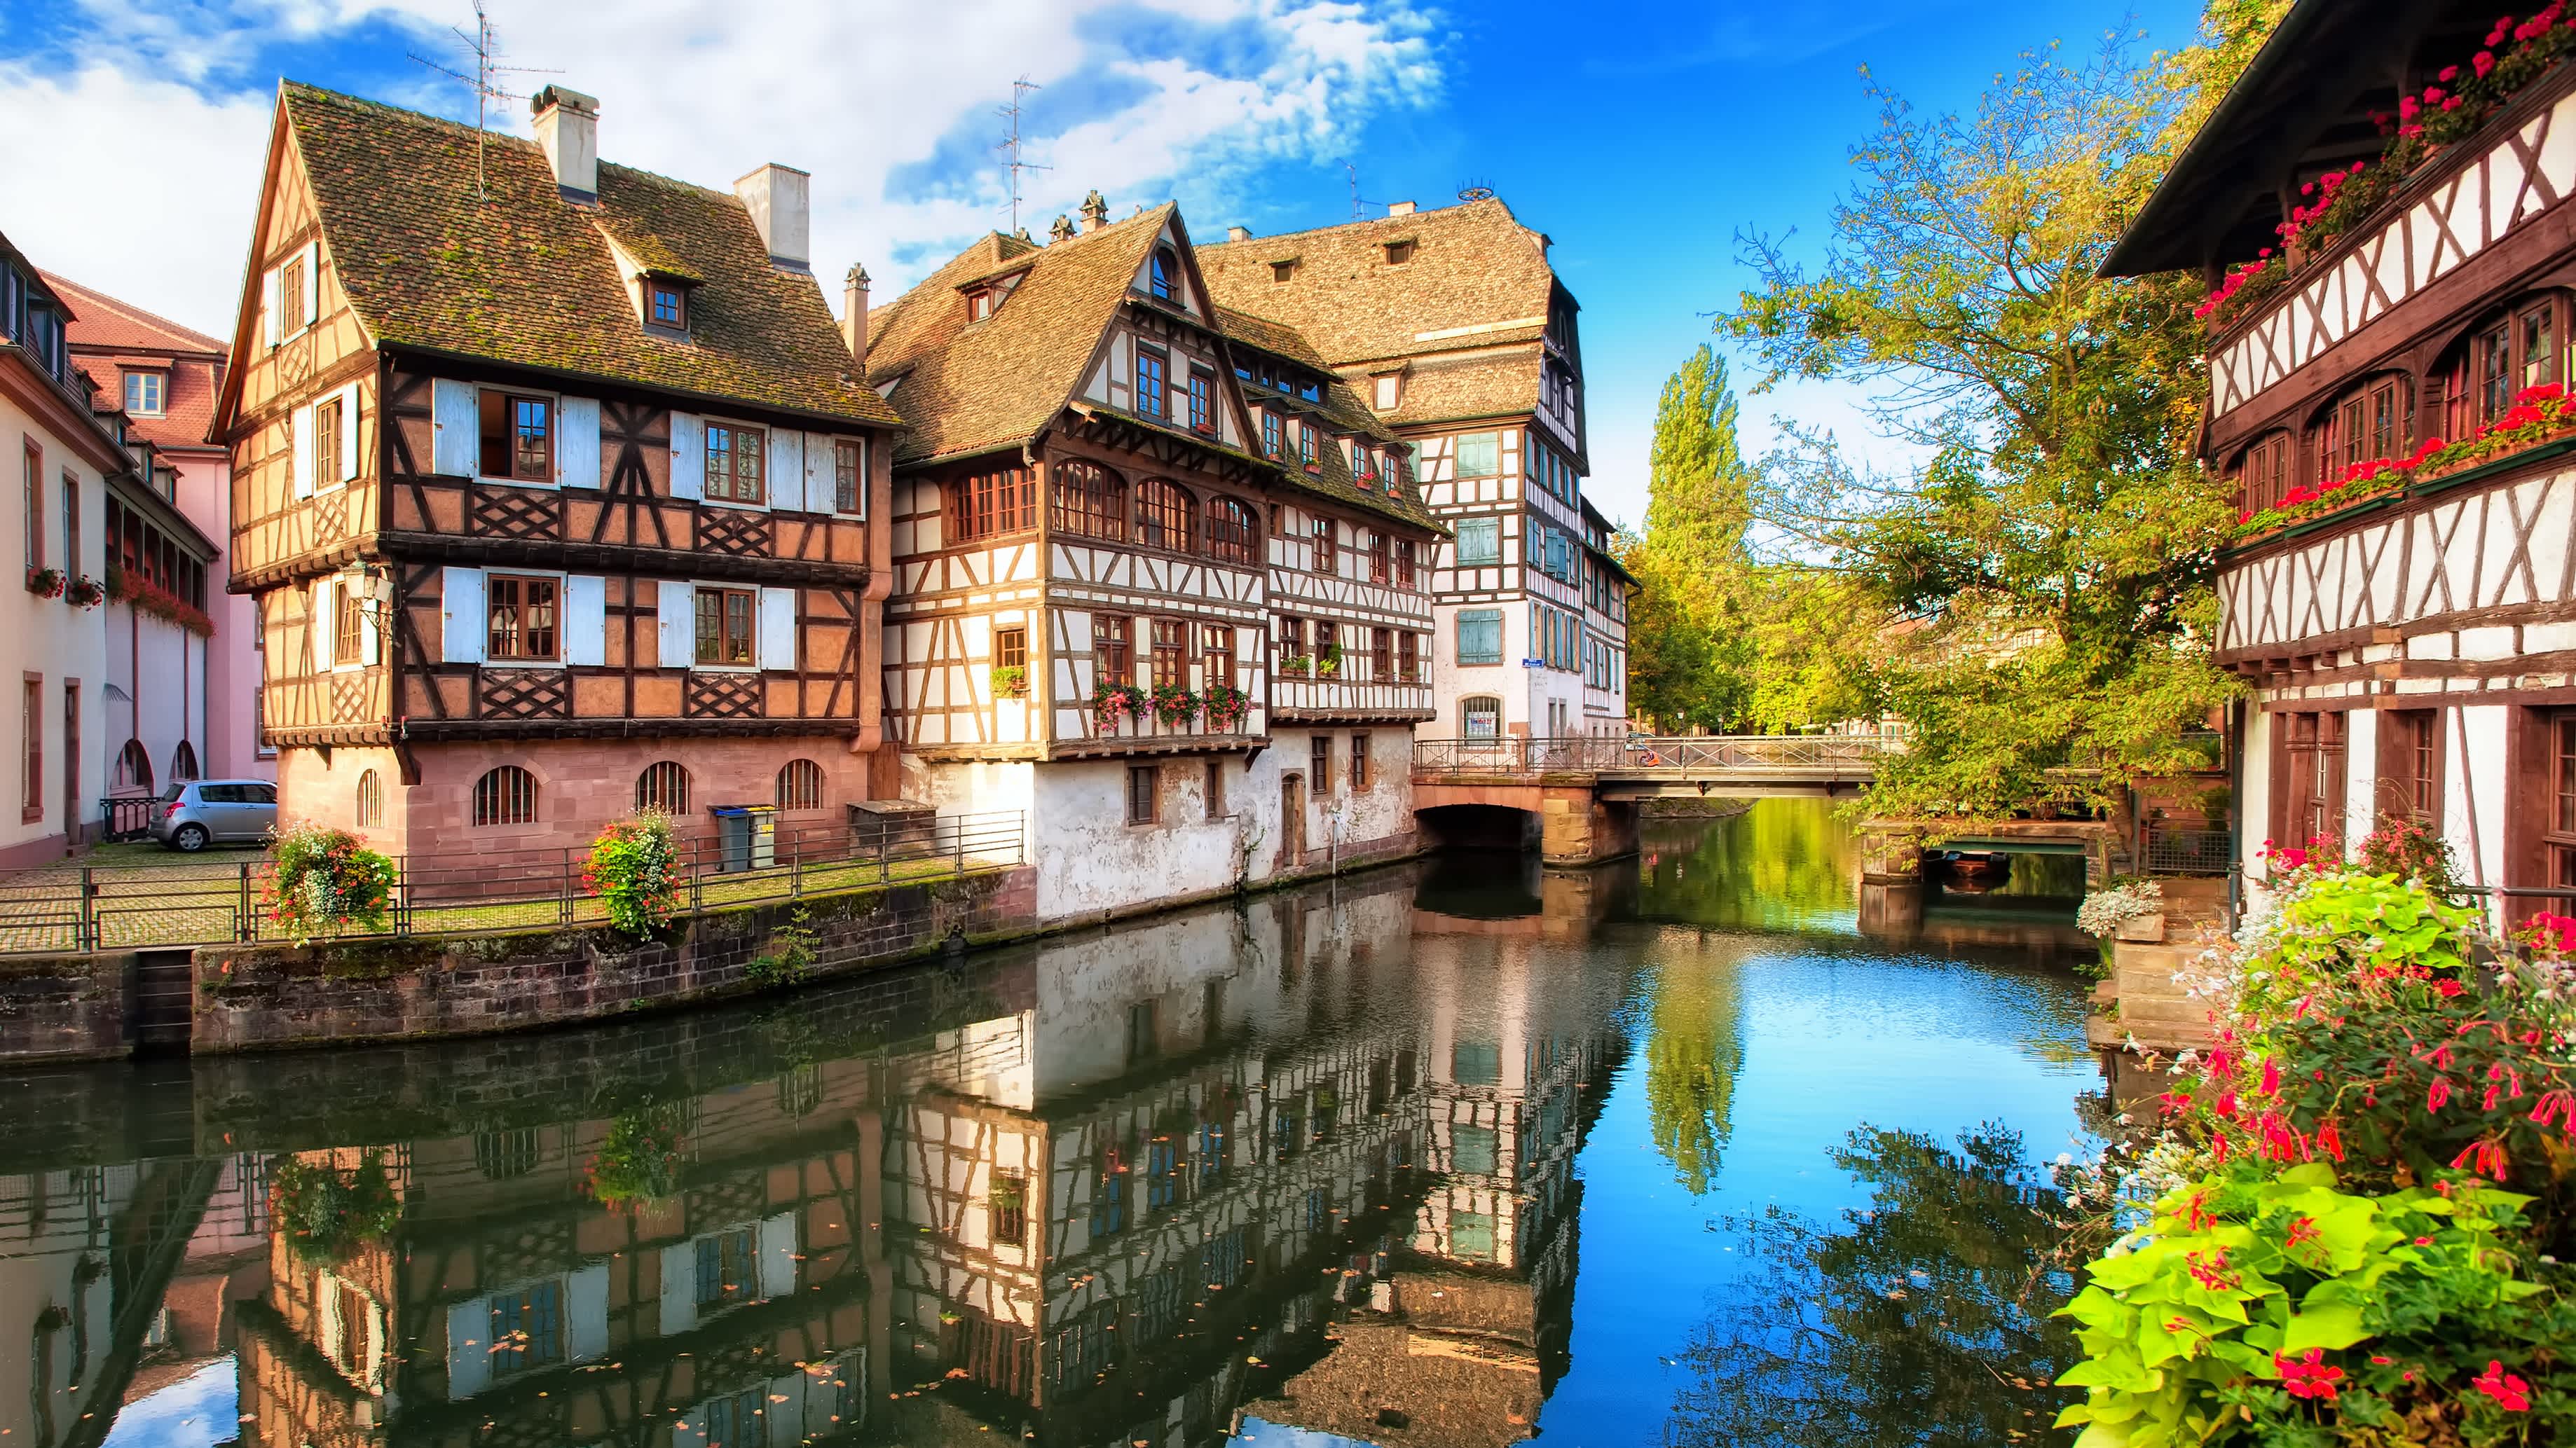 Traditionelle Fachwerkhäuser im Stadtteil La Petite France in Straßburg